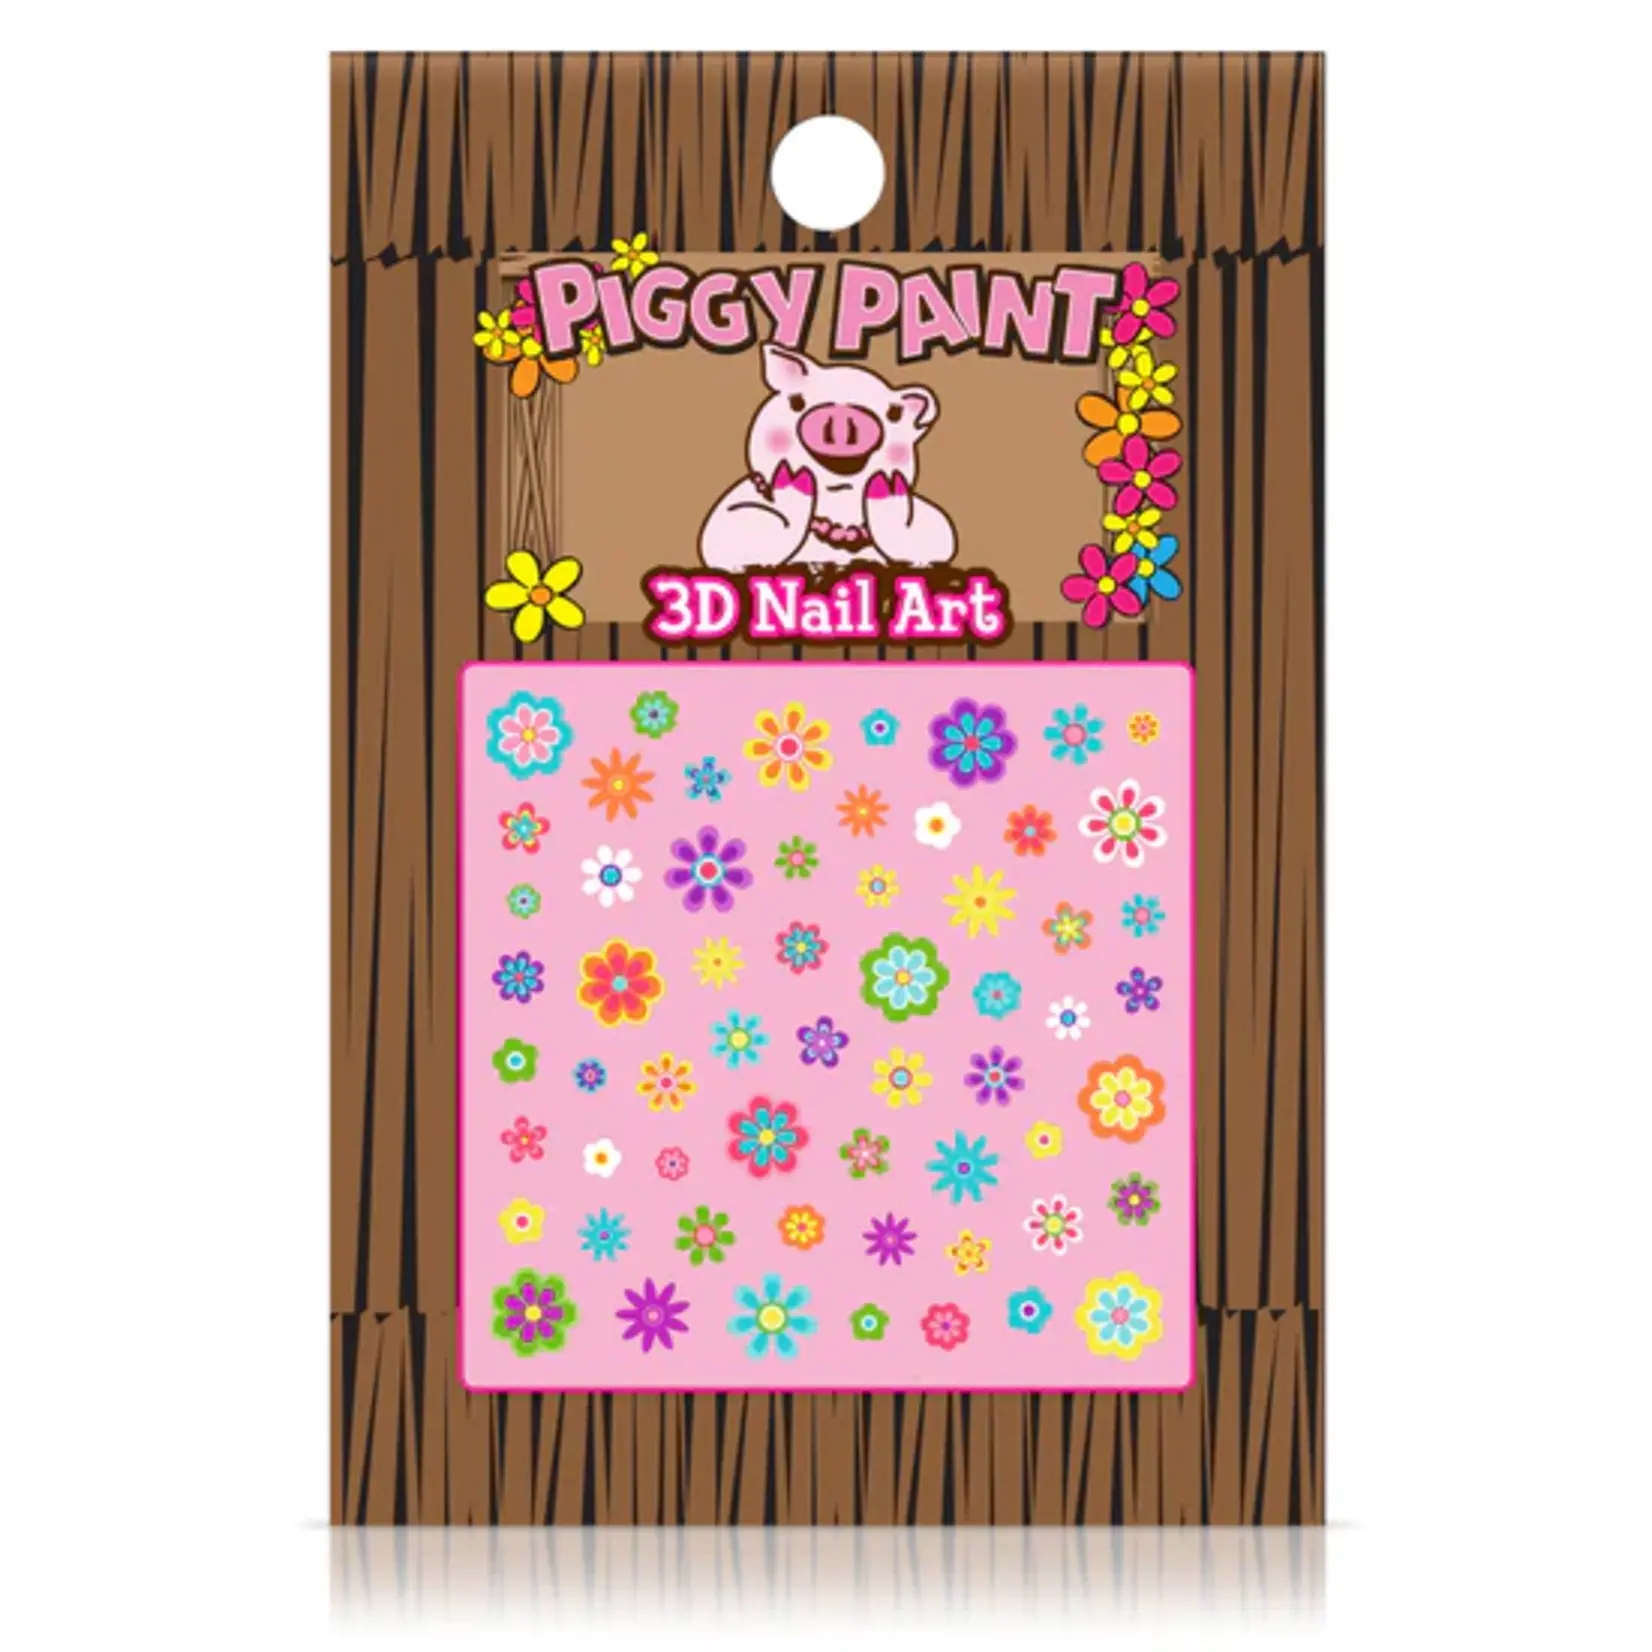 Piggy Paint Piggy Paint Nail Art Flower